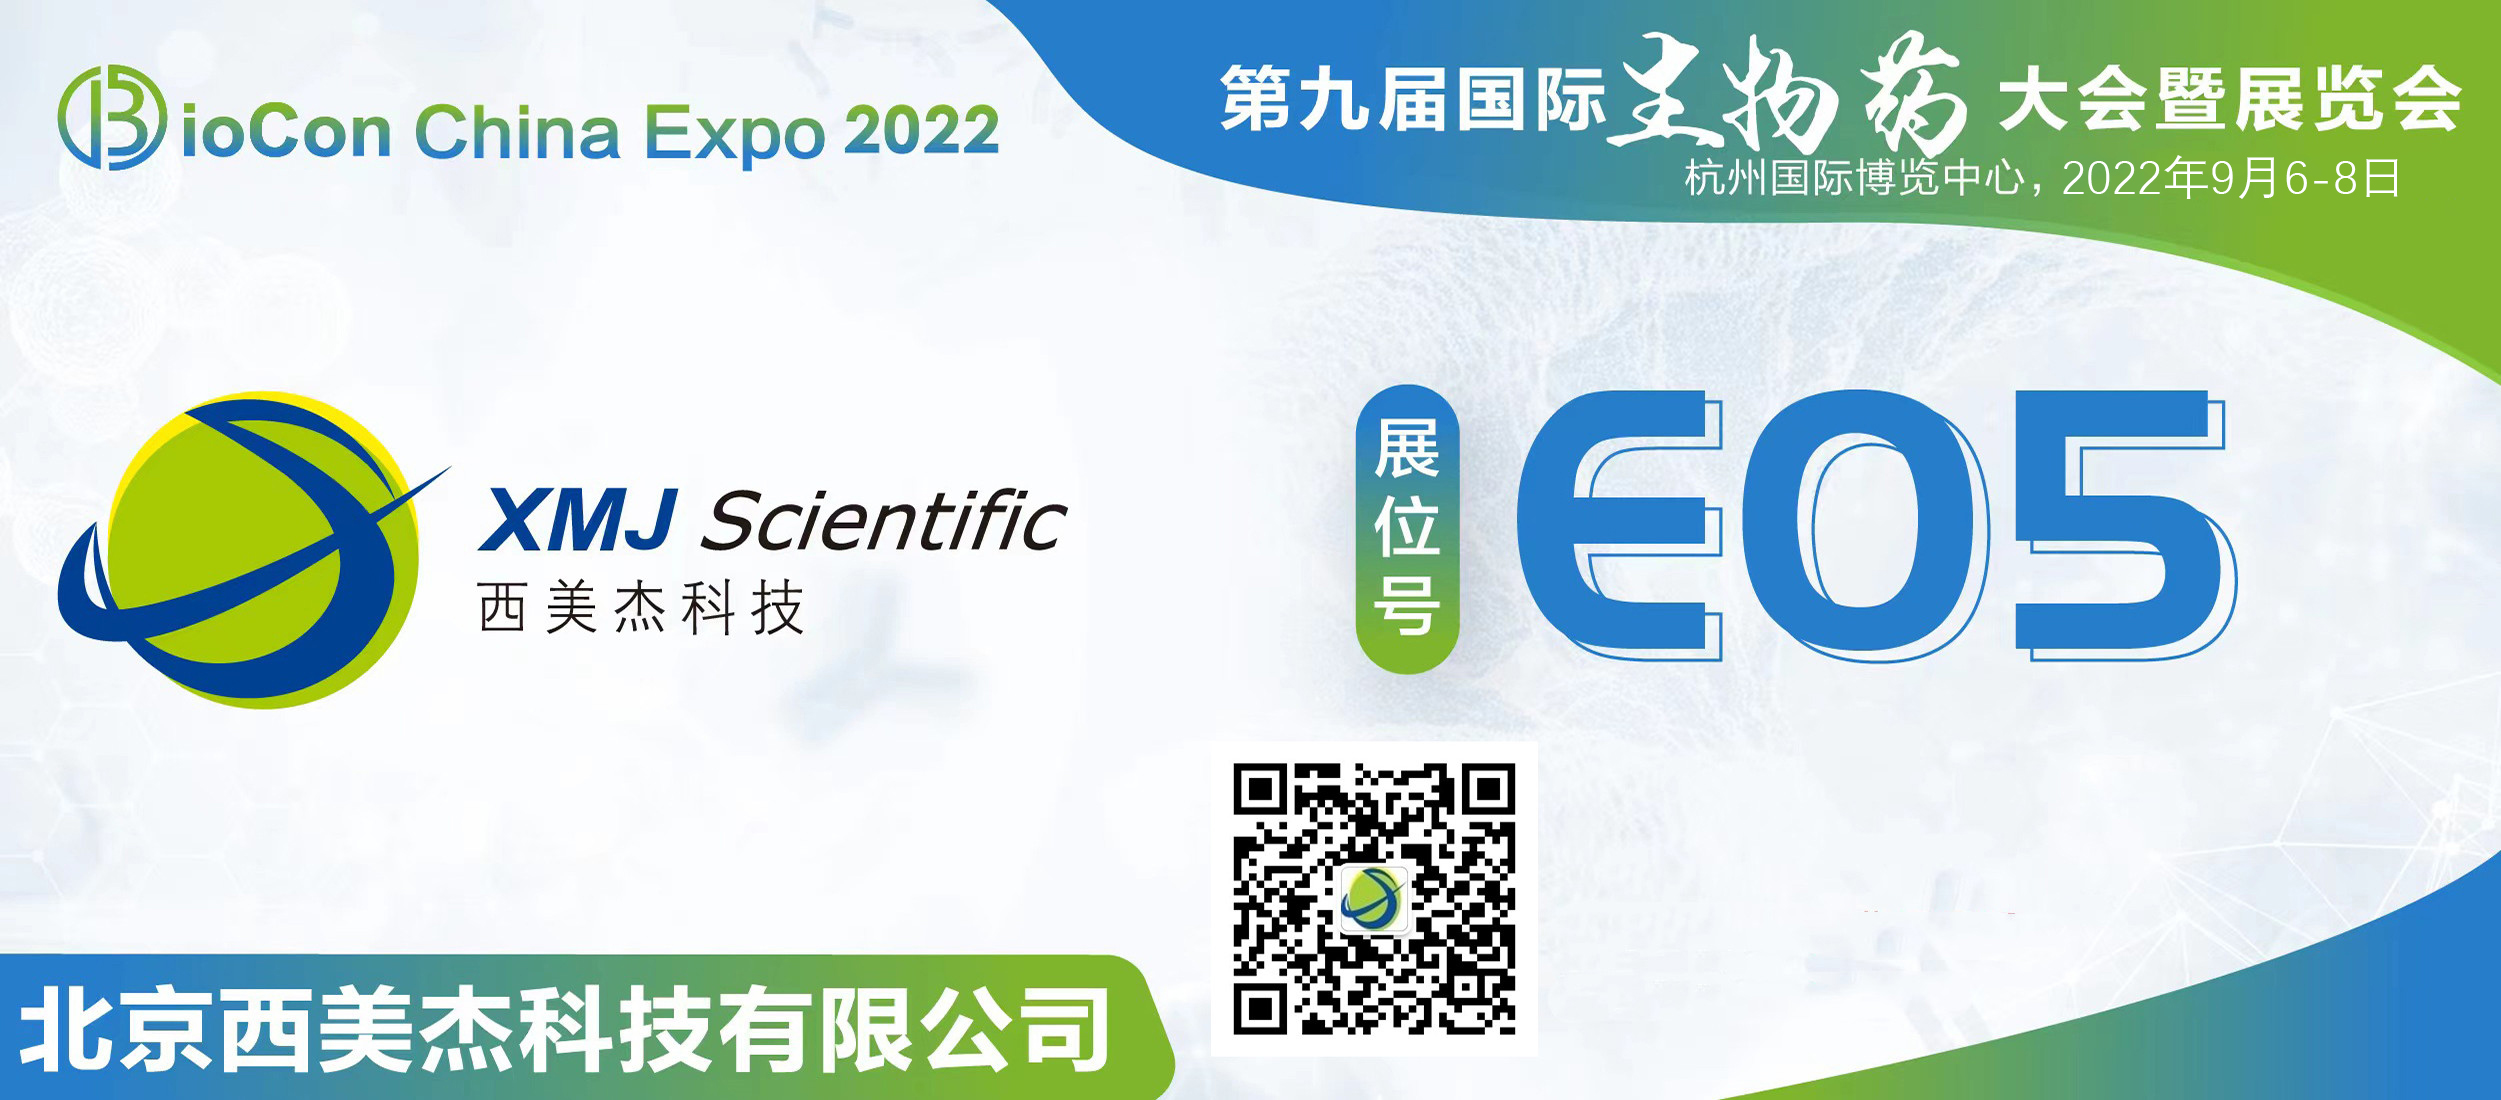 全网最大下注平台邀您参加第九届国际生物药大会暨展览会BioCon Expo 2022